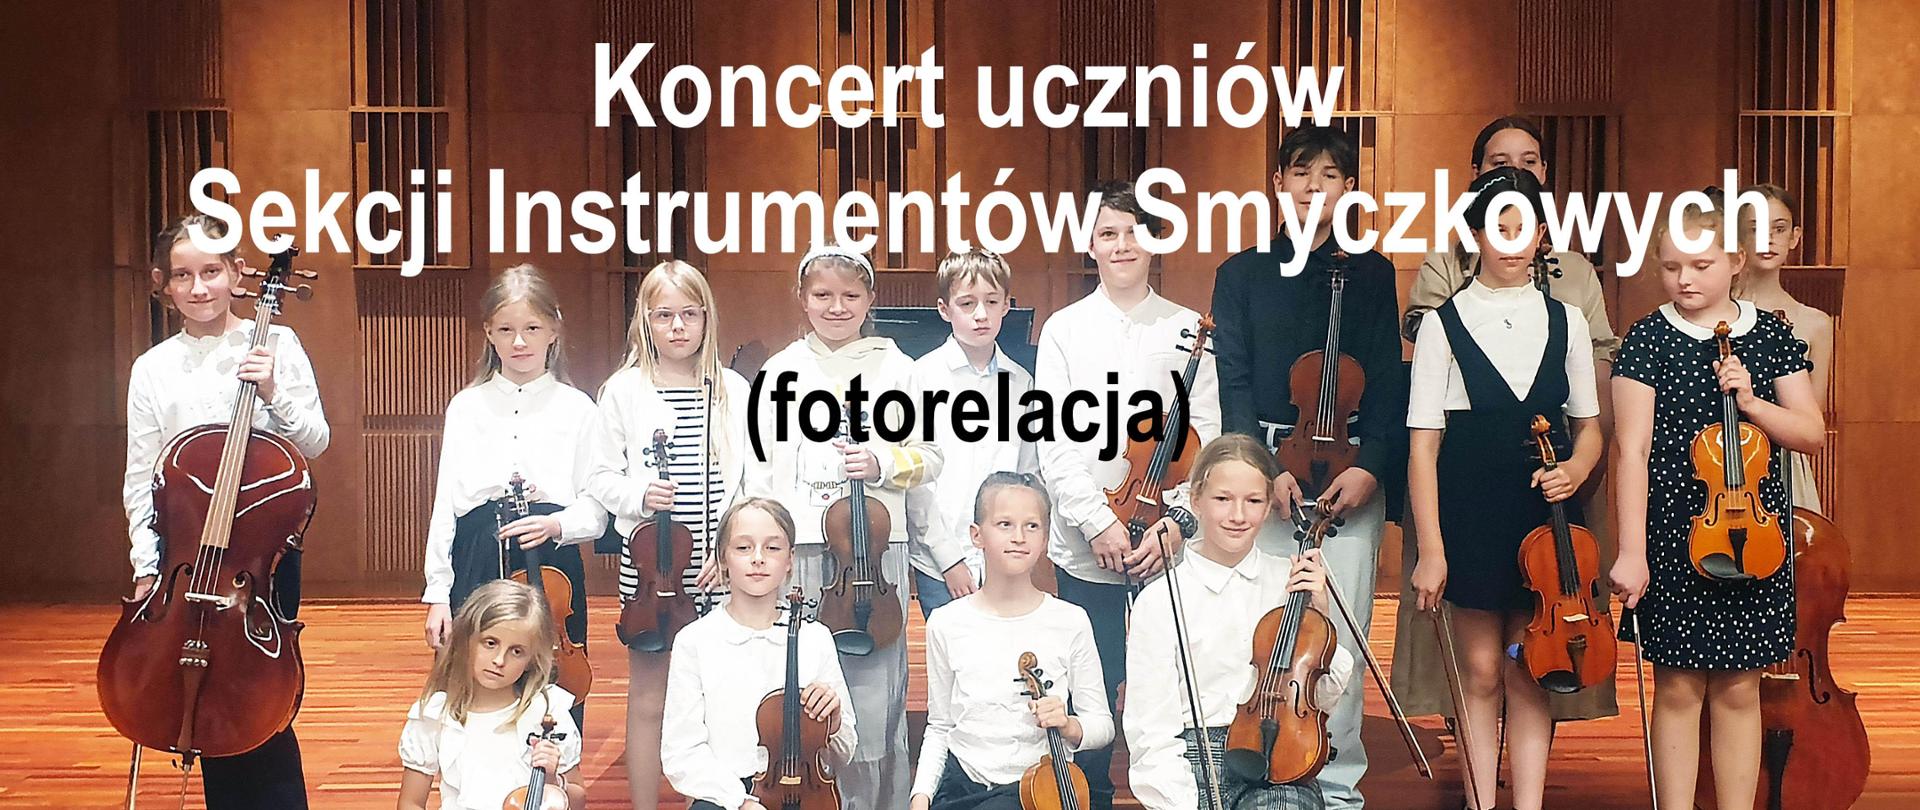 Zdjęcie tytułowe fotorelacji z Koncertu uczniów Sekcji Instrumentów Smyczkowej.